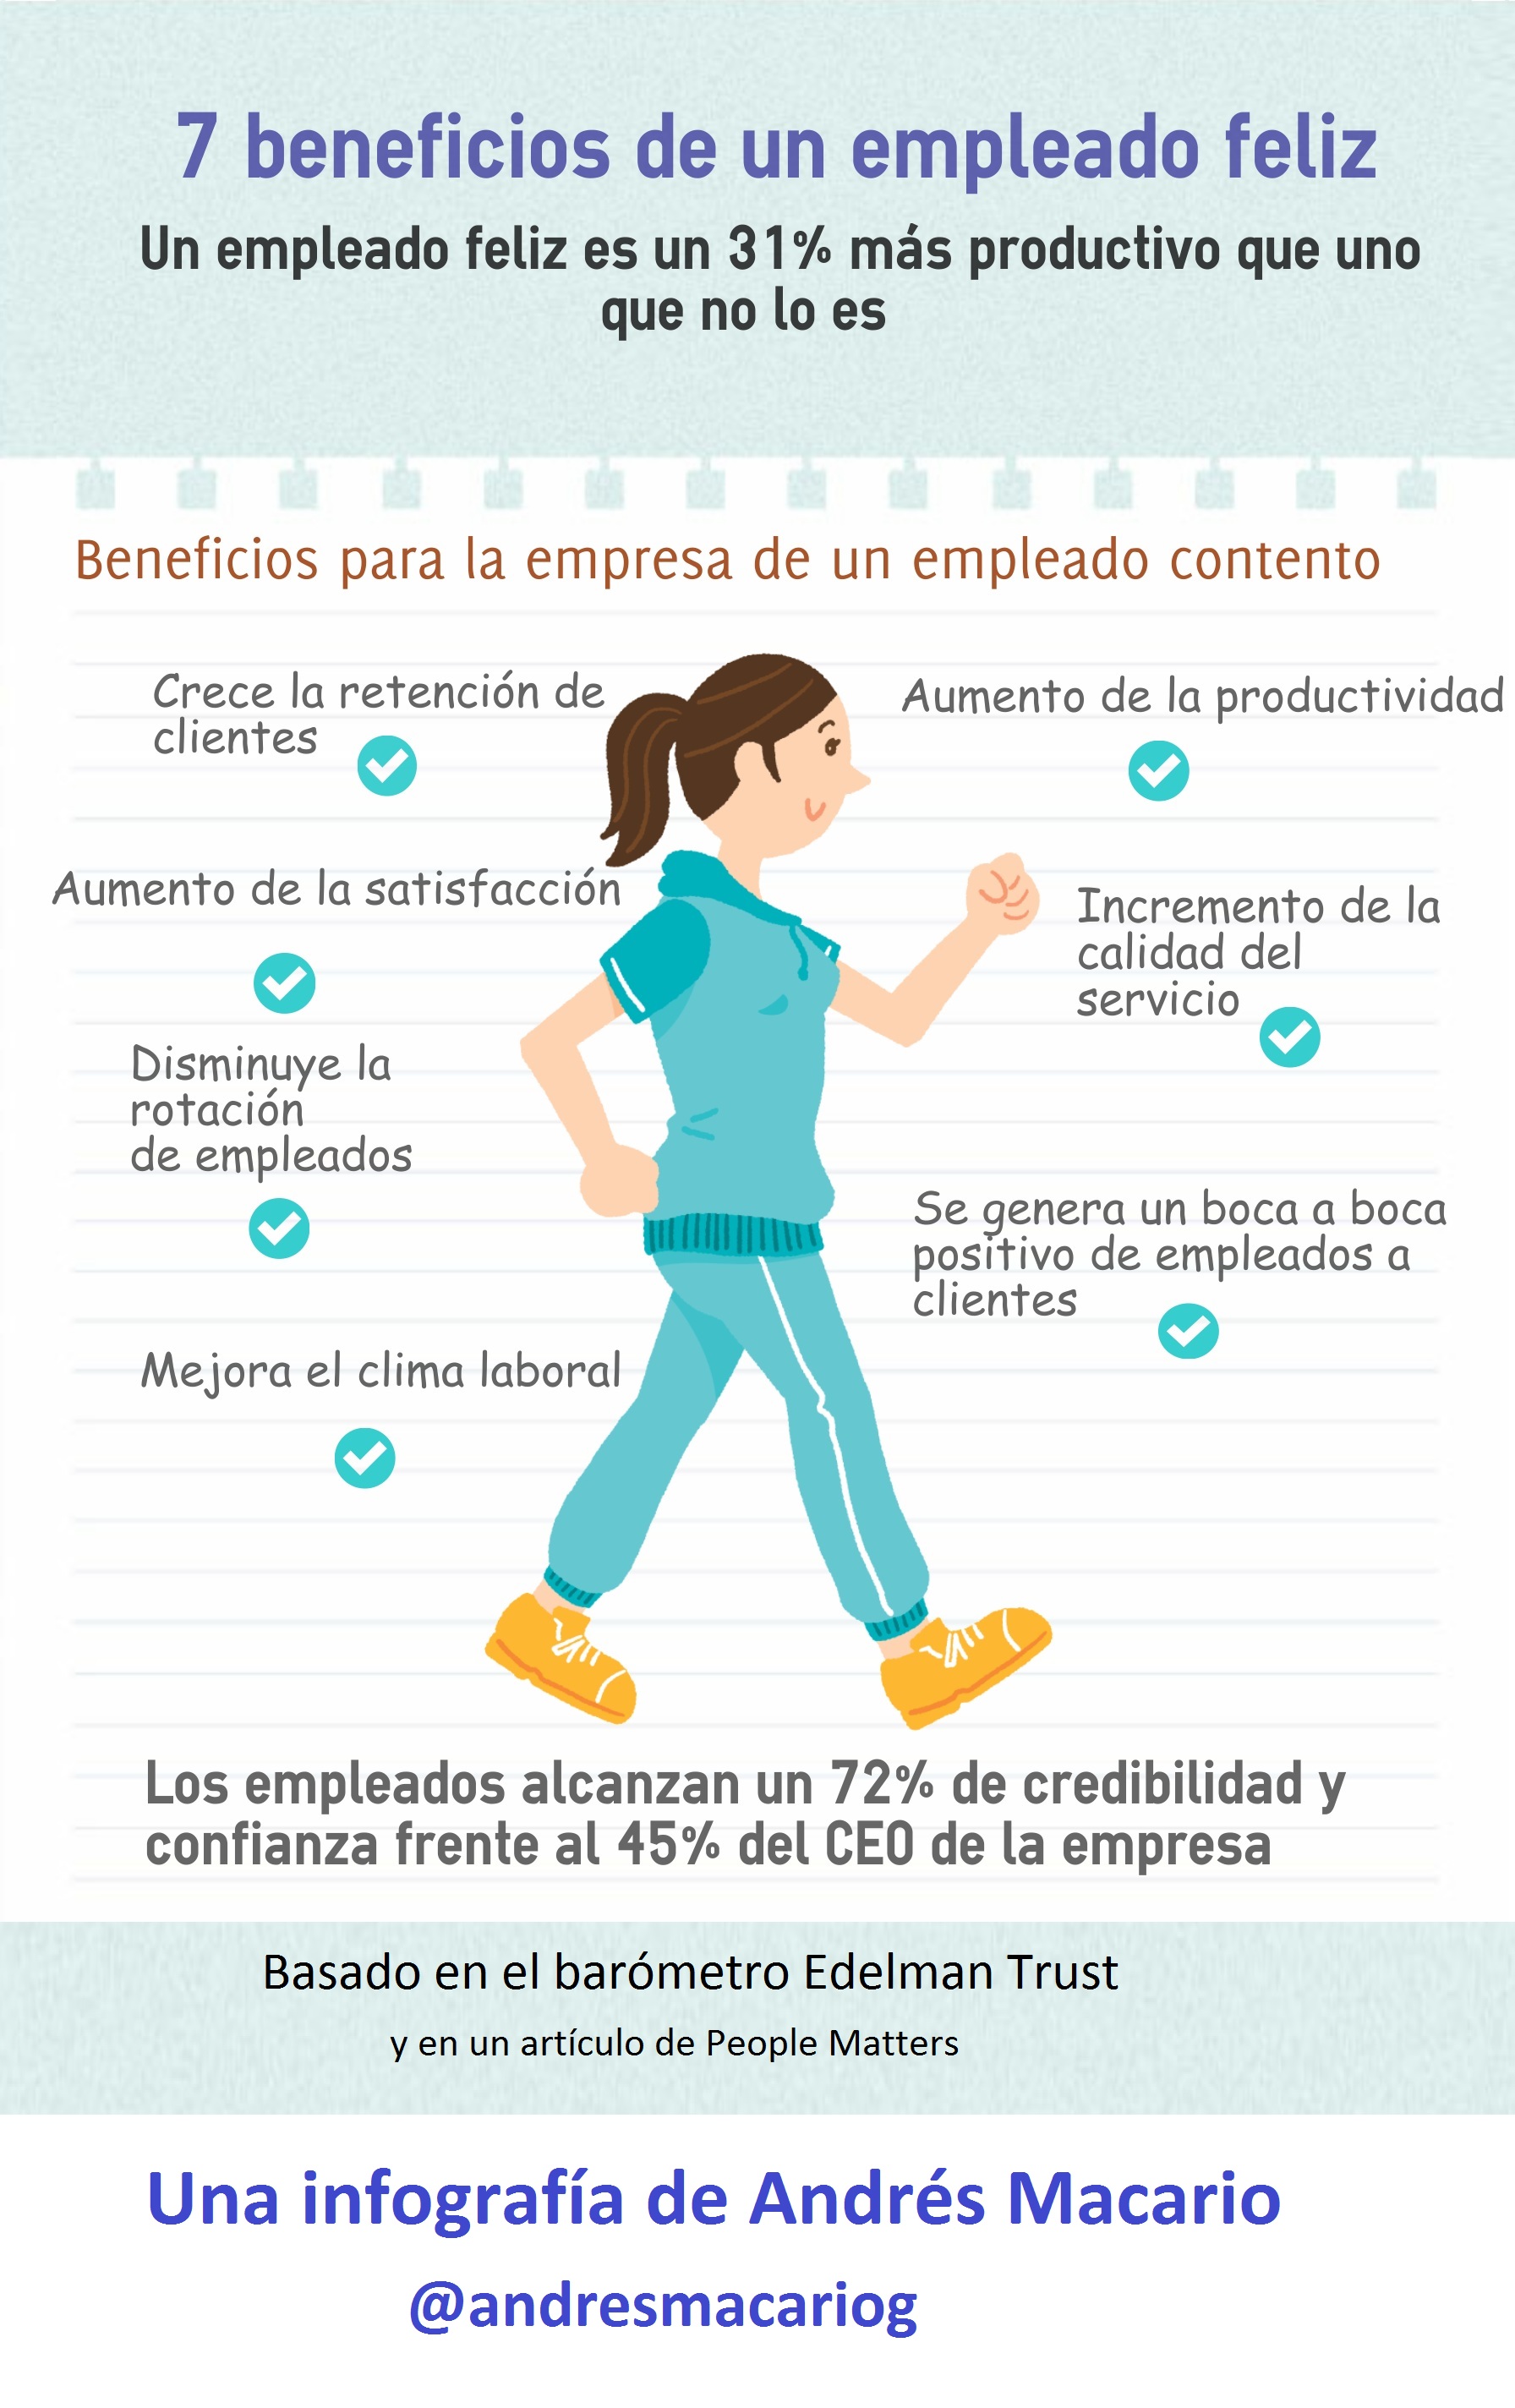 7 beneficios de un empleado feliz - Infografia de Andres Macario